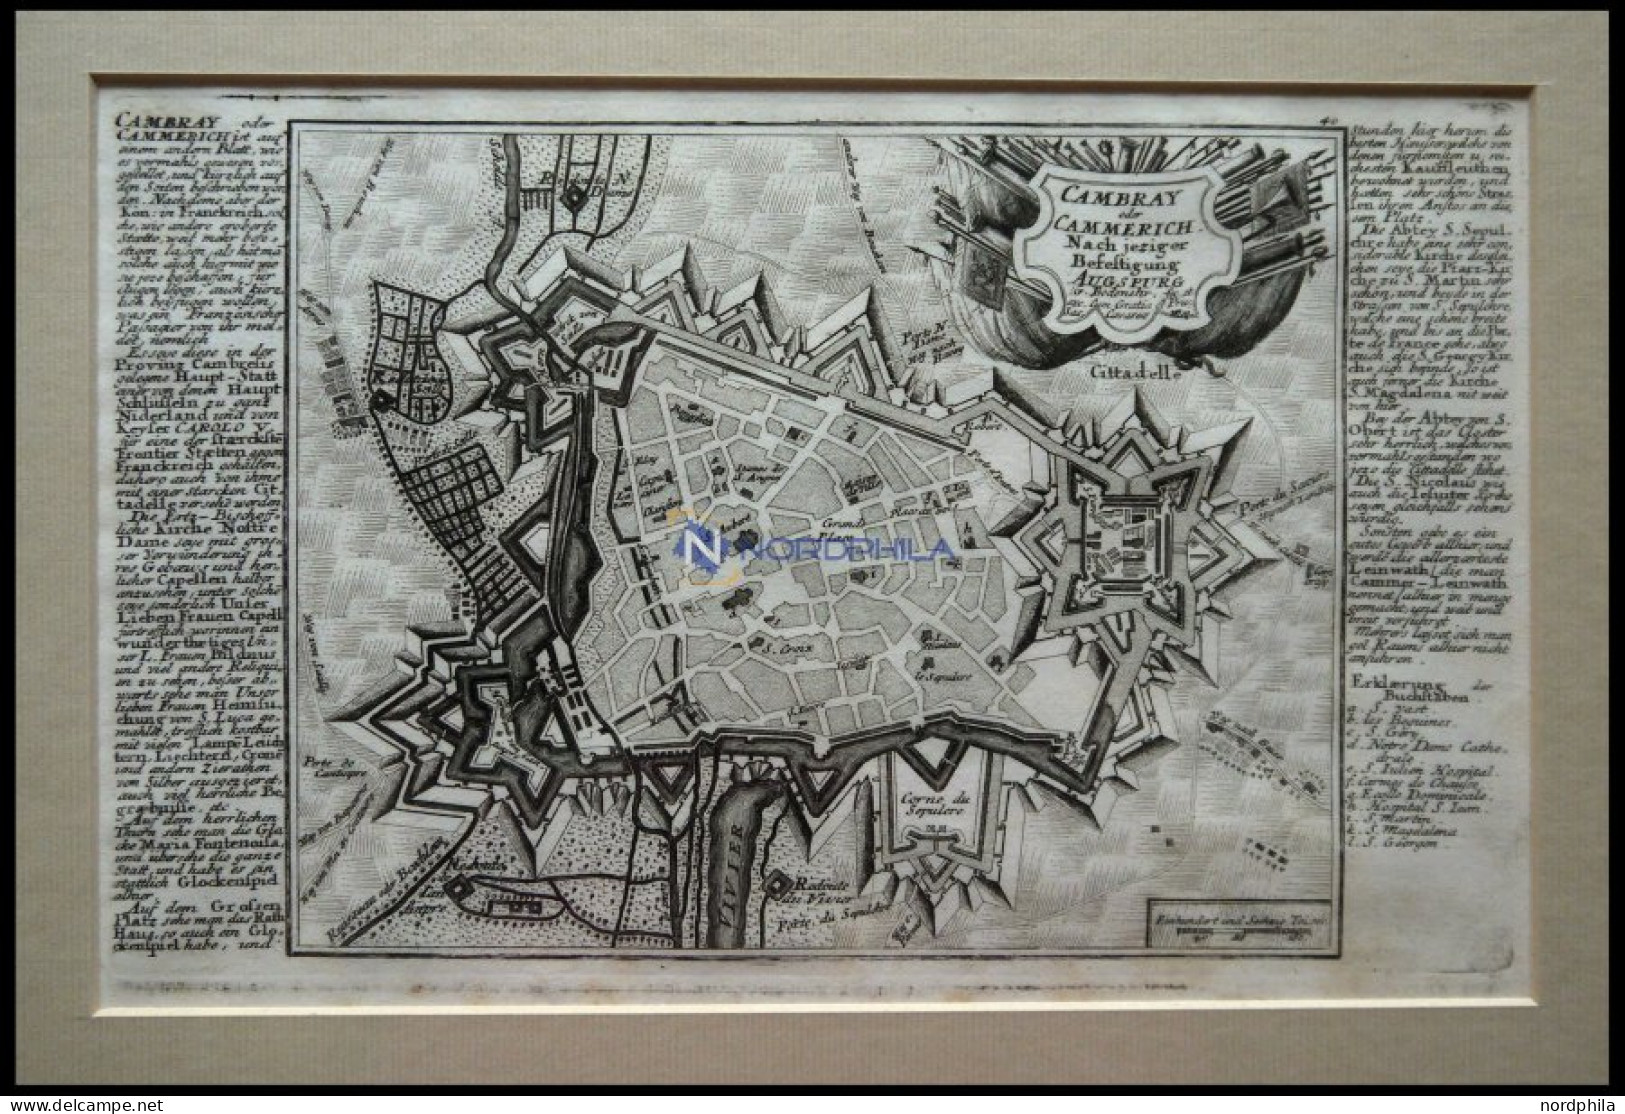 CAMBRAY, Gesamtansicht Aus Der Vogelschau, Kupferstich-Plan Von Bodenehr Um 1720 - Lithographien